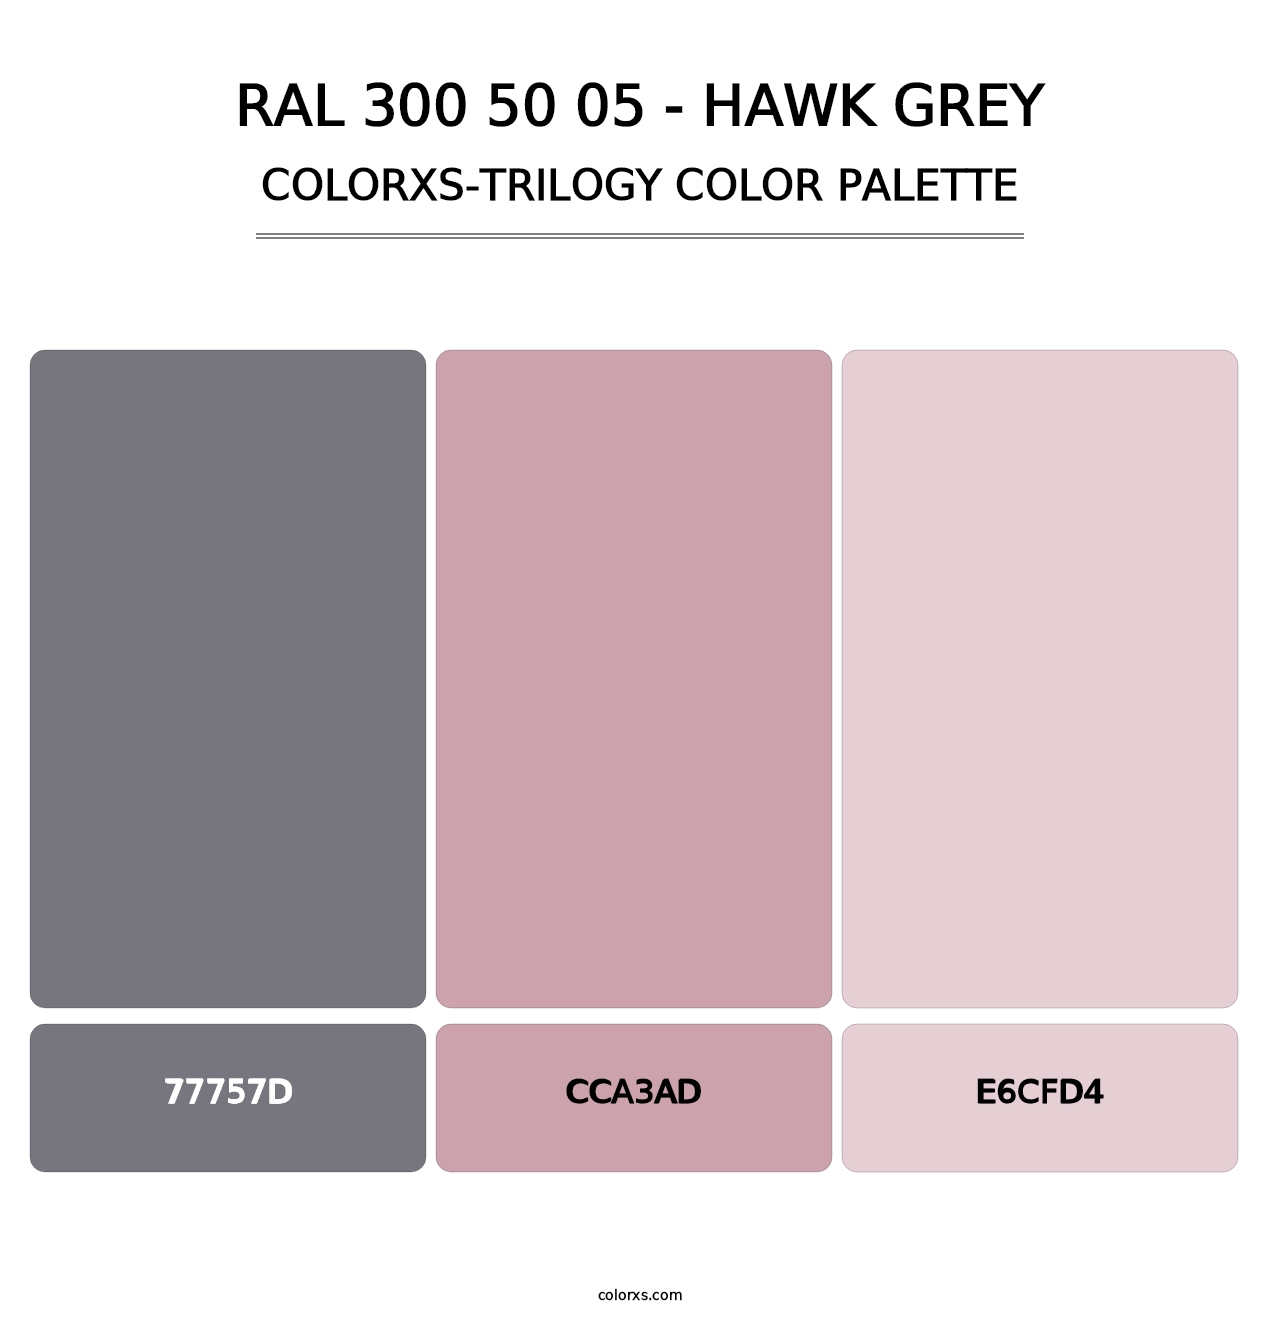 RAL 300 50 05 - Hawk Grey - Colorxs Trilogy Palette